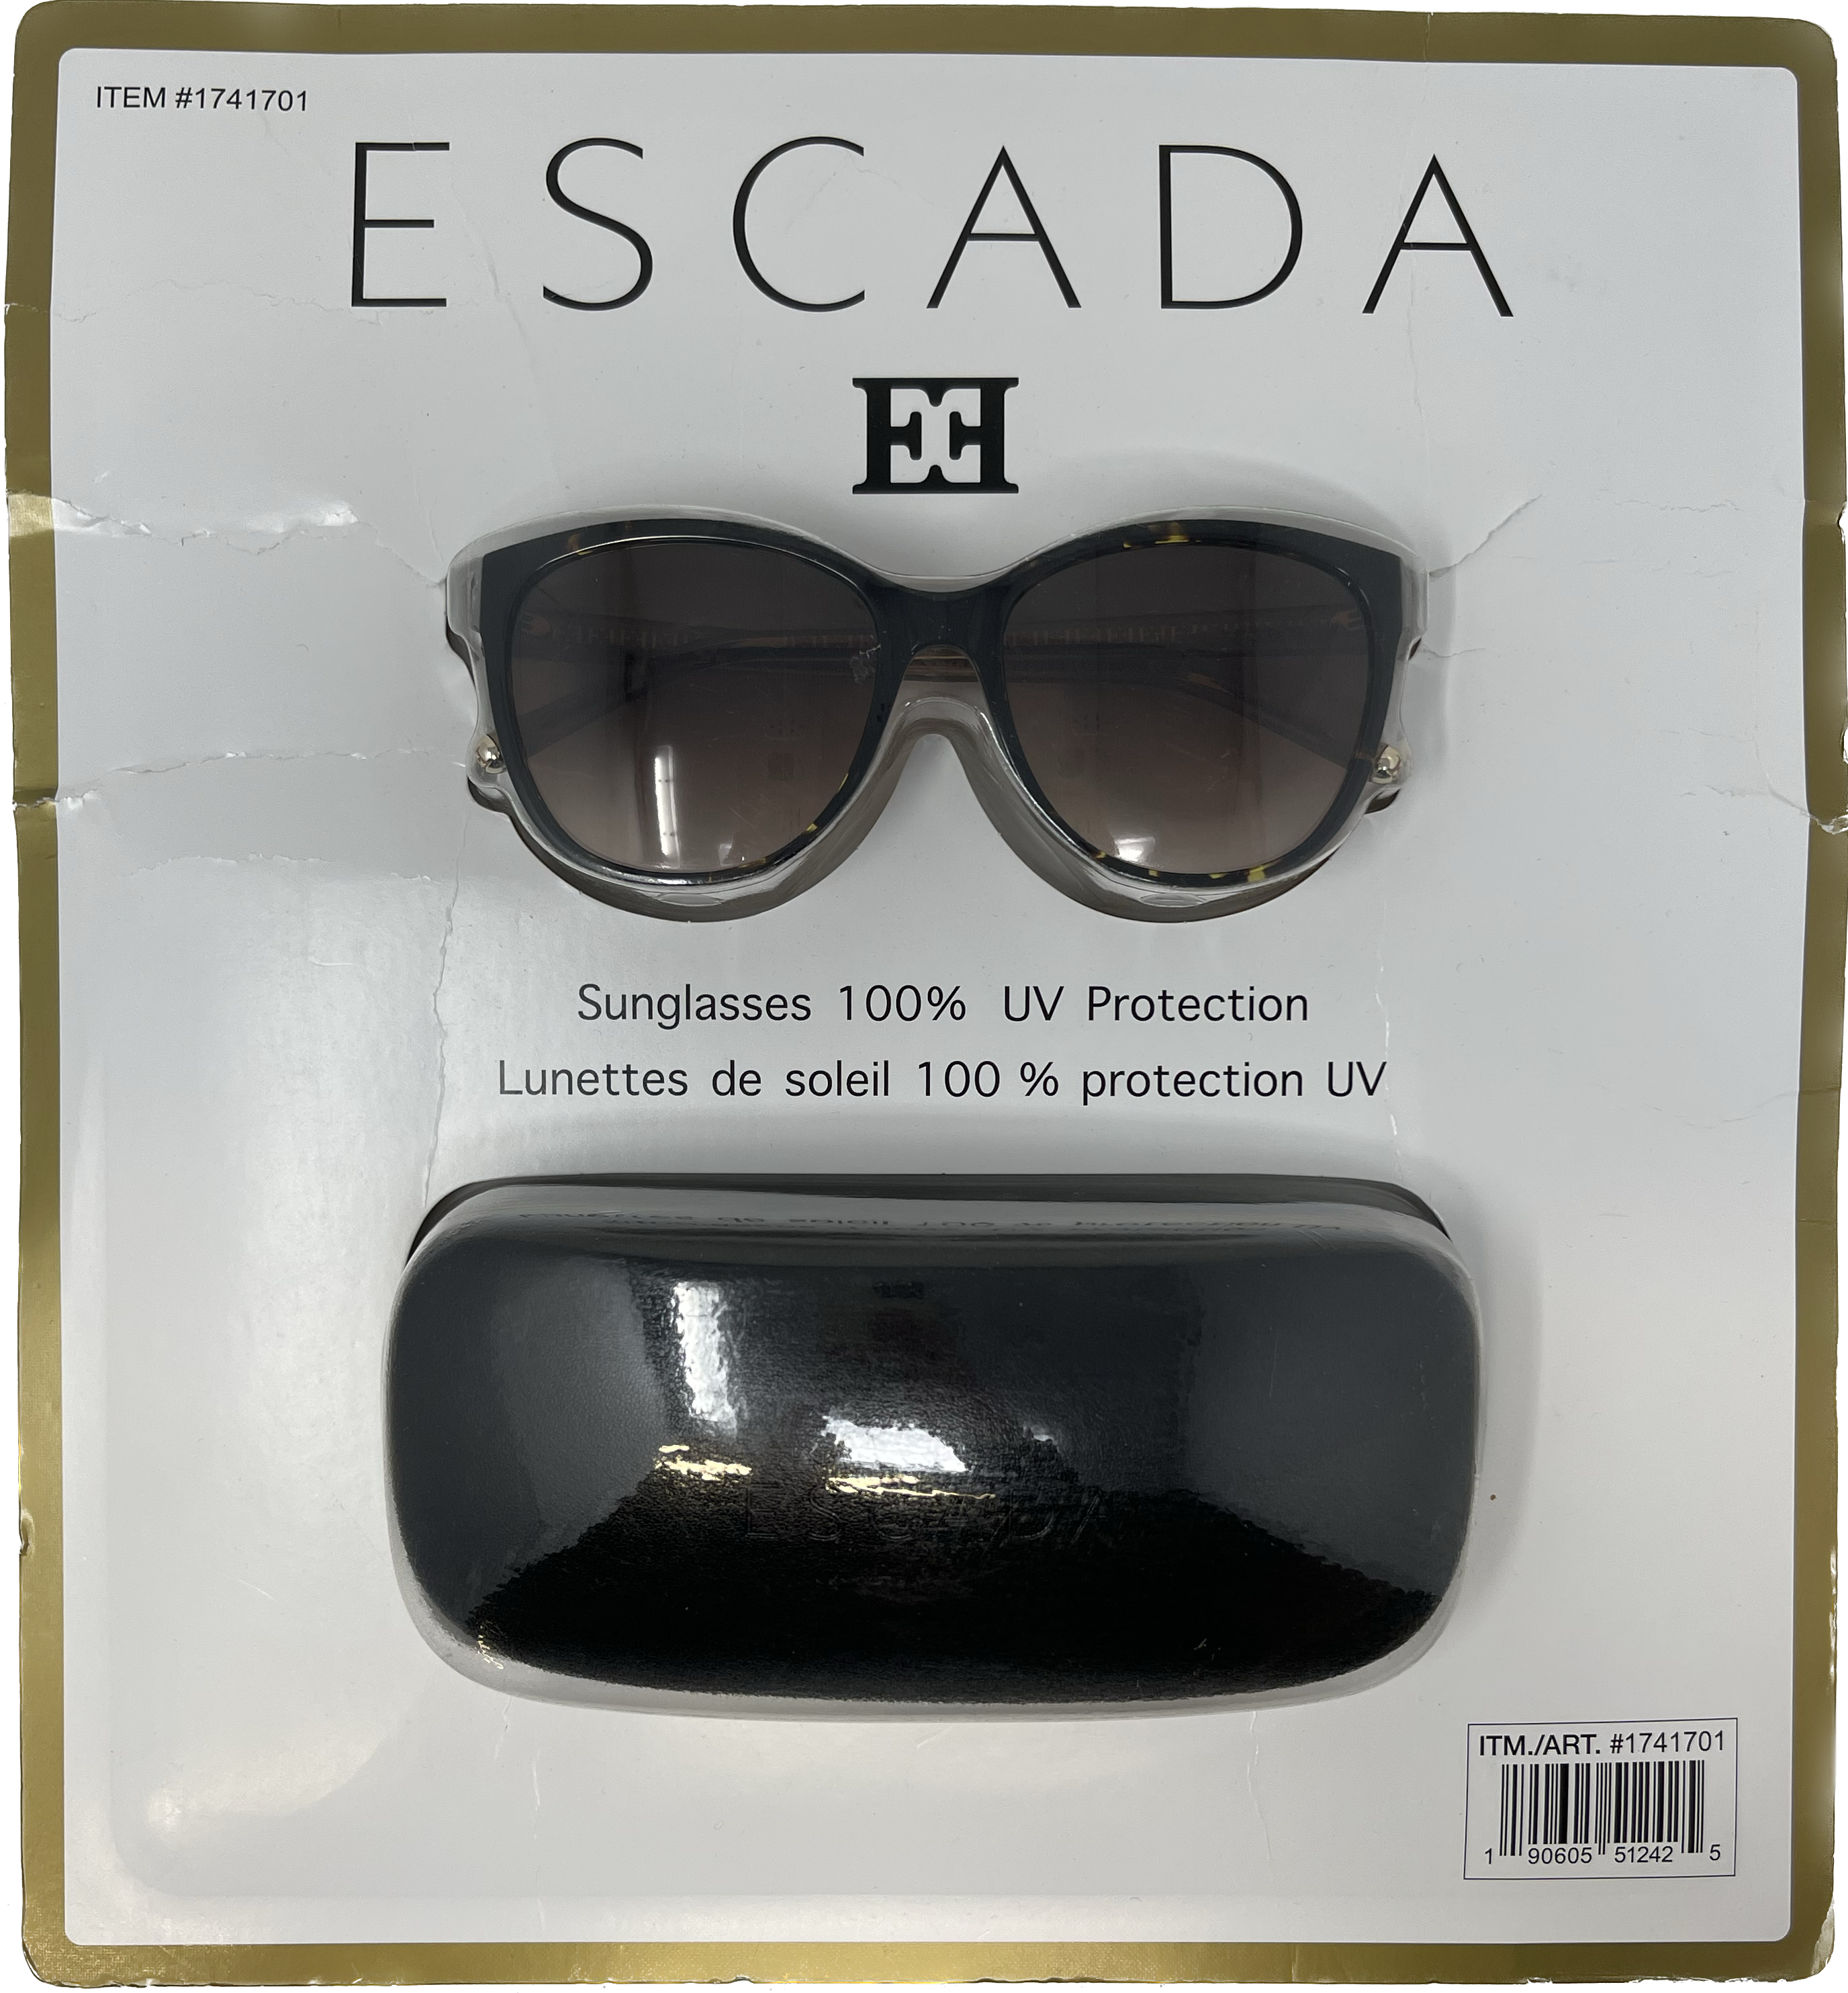 ESCADA sunglasses item #1741701